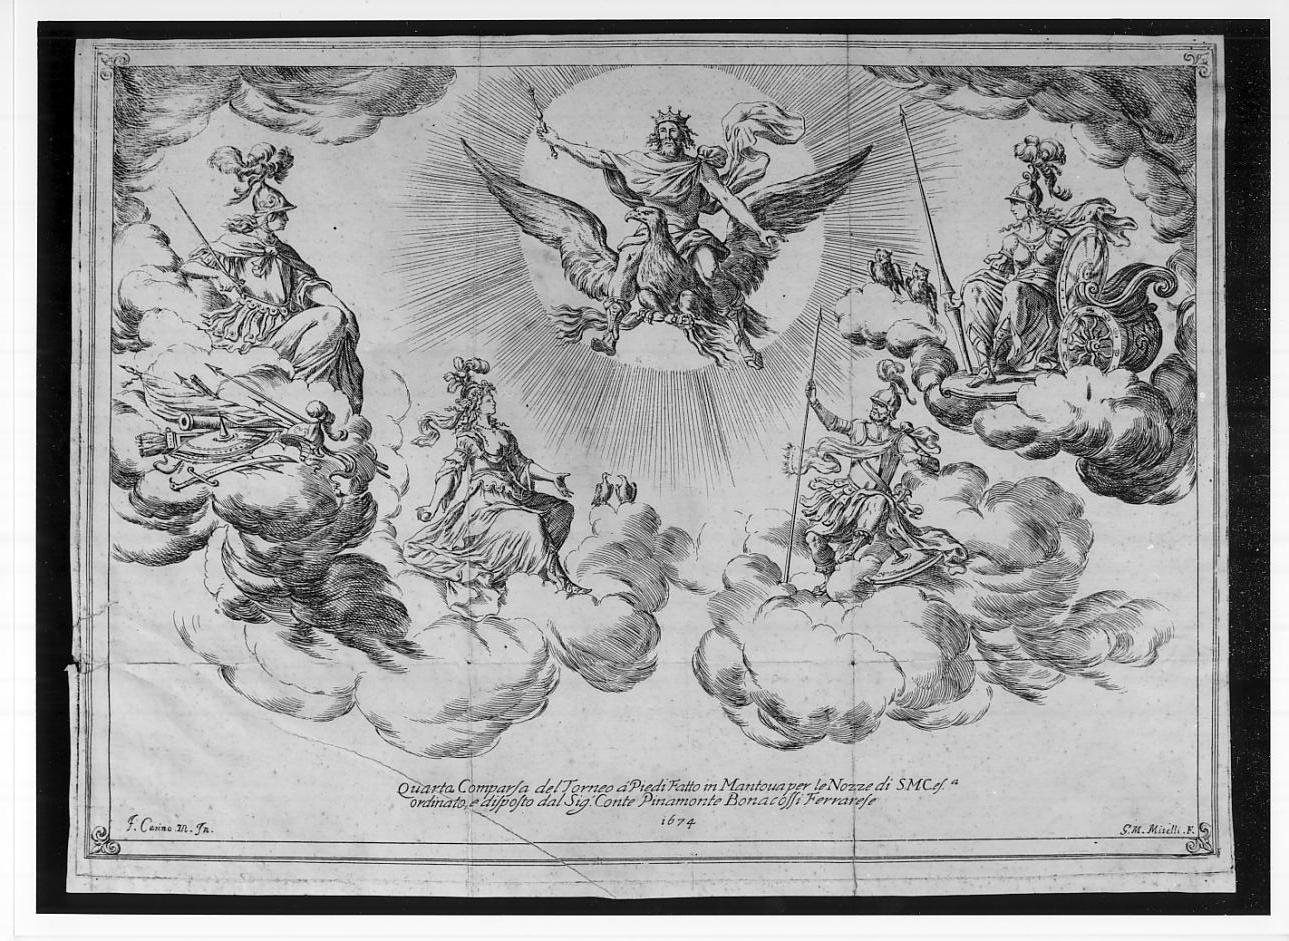 Quarta comparsa del torneo rappresentato il 15 maggio 1674 al teatro Fedeli di Mantova (stampa, serie) di Mitelli Giuseppe Maria, Carini Fabrizio detto Motta (sec. XVII)